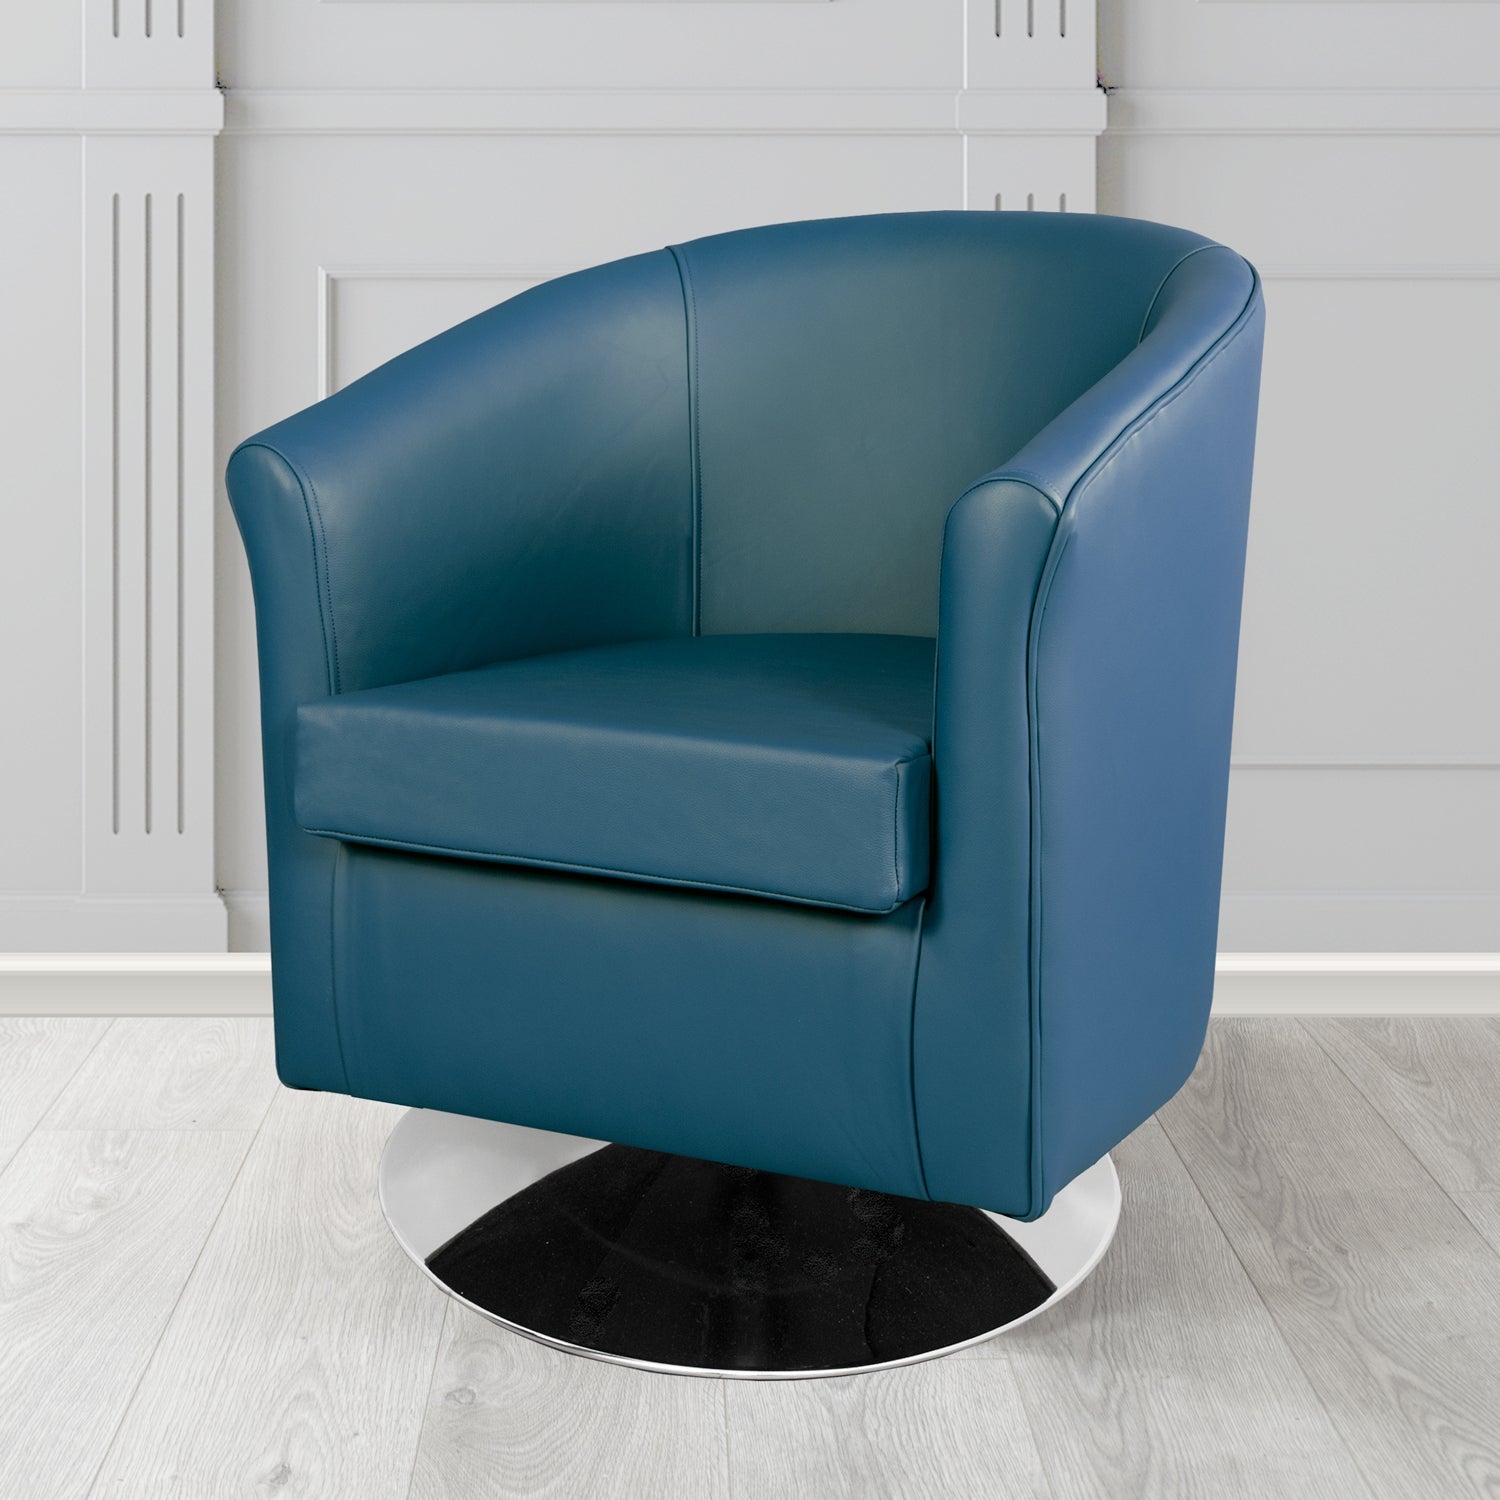 Tuscany Shelly Majolica Blue Crib 5 Genuine Leather Swivel Tub Chair - The Tub Chair Shop